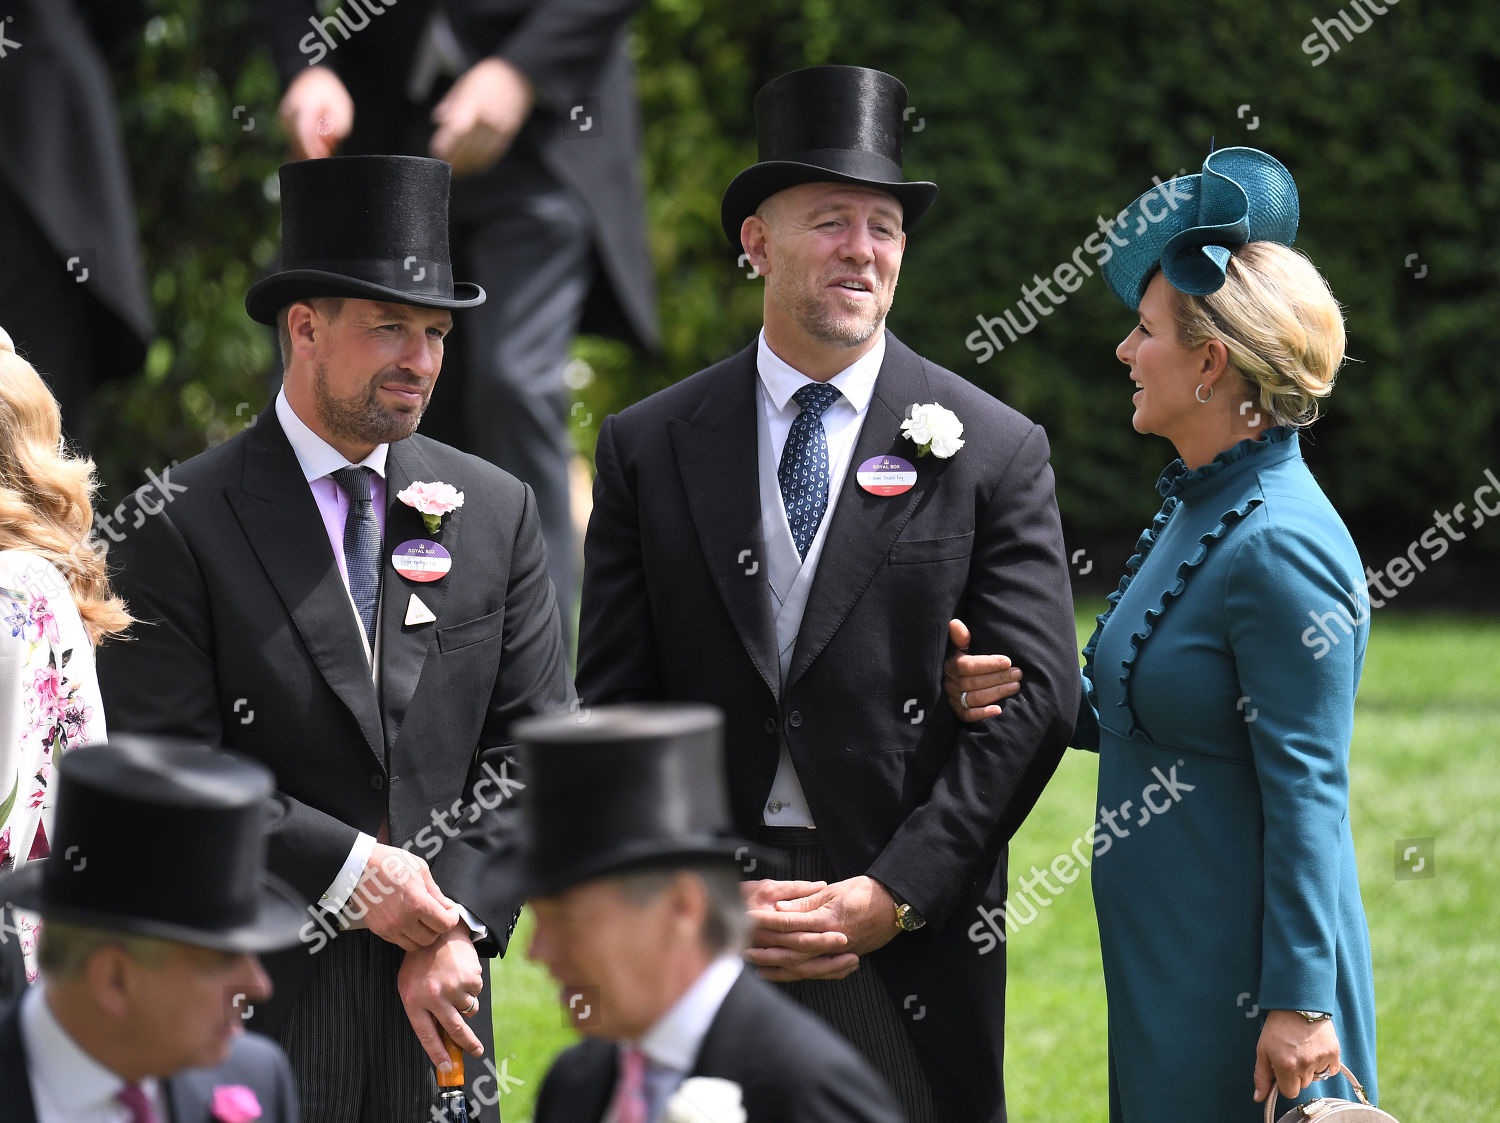 royal-ascot-ladies-day-uk-20-jun-2019-shutterstock-editorial-10317166ek.jpg